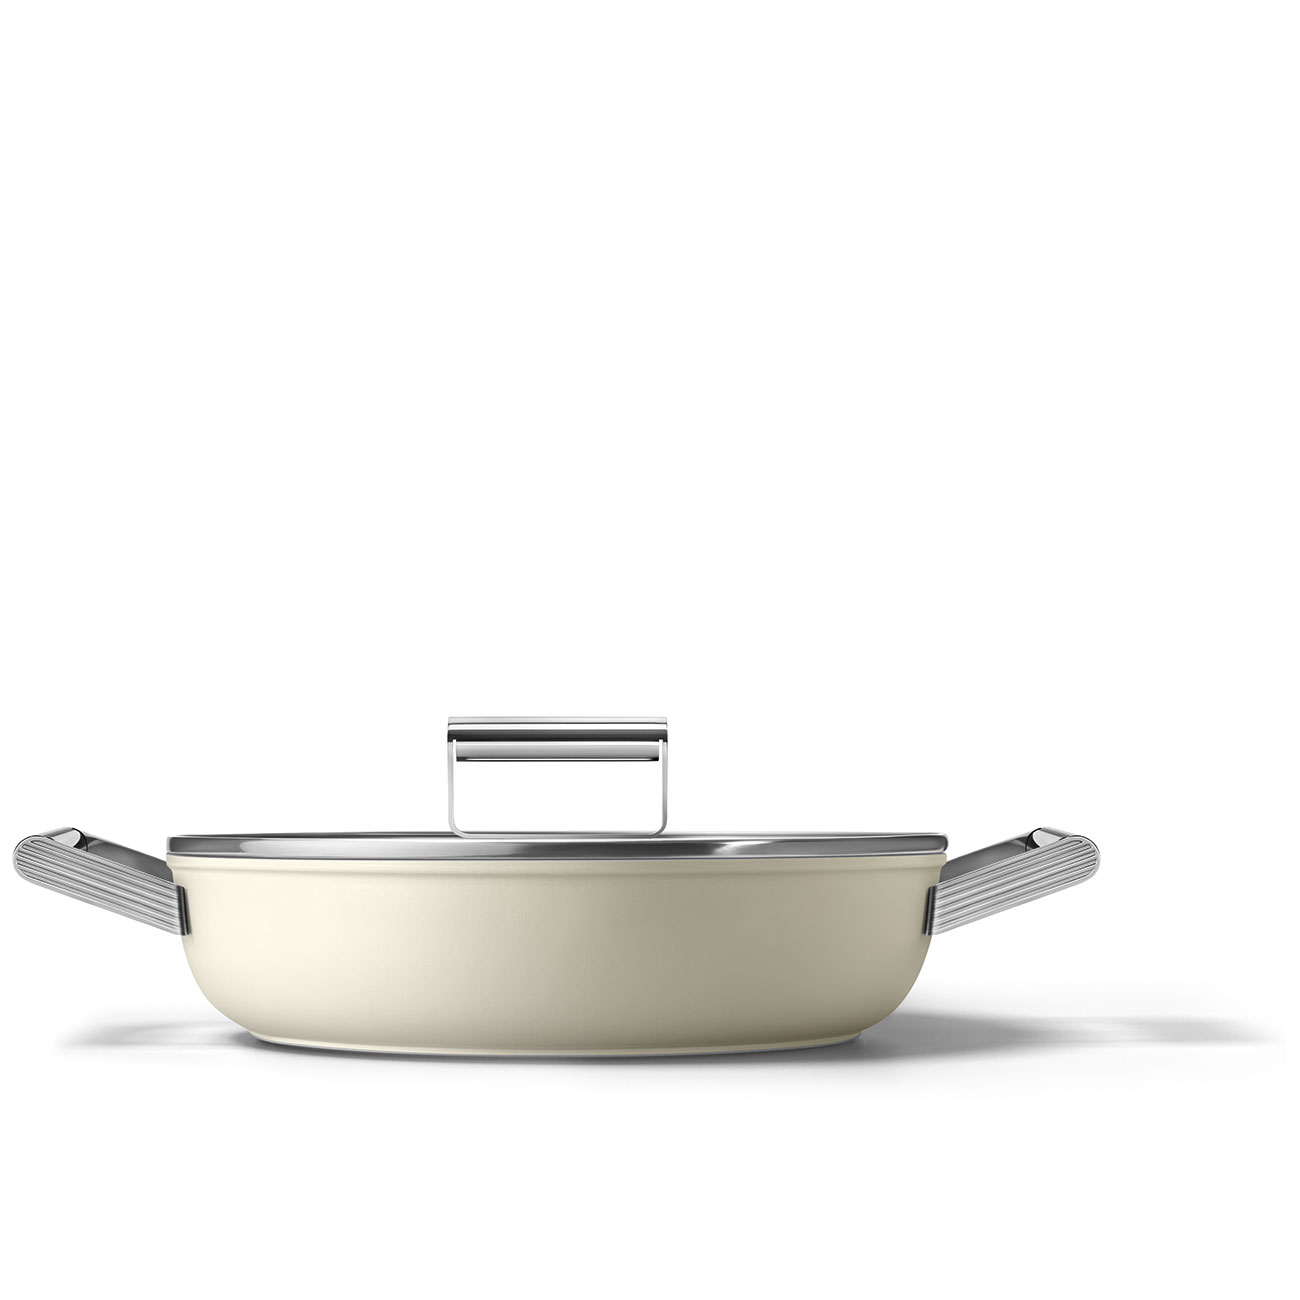 cacerola beige color crema vista lateral calidad diseño SMEG cocina estilo